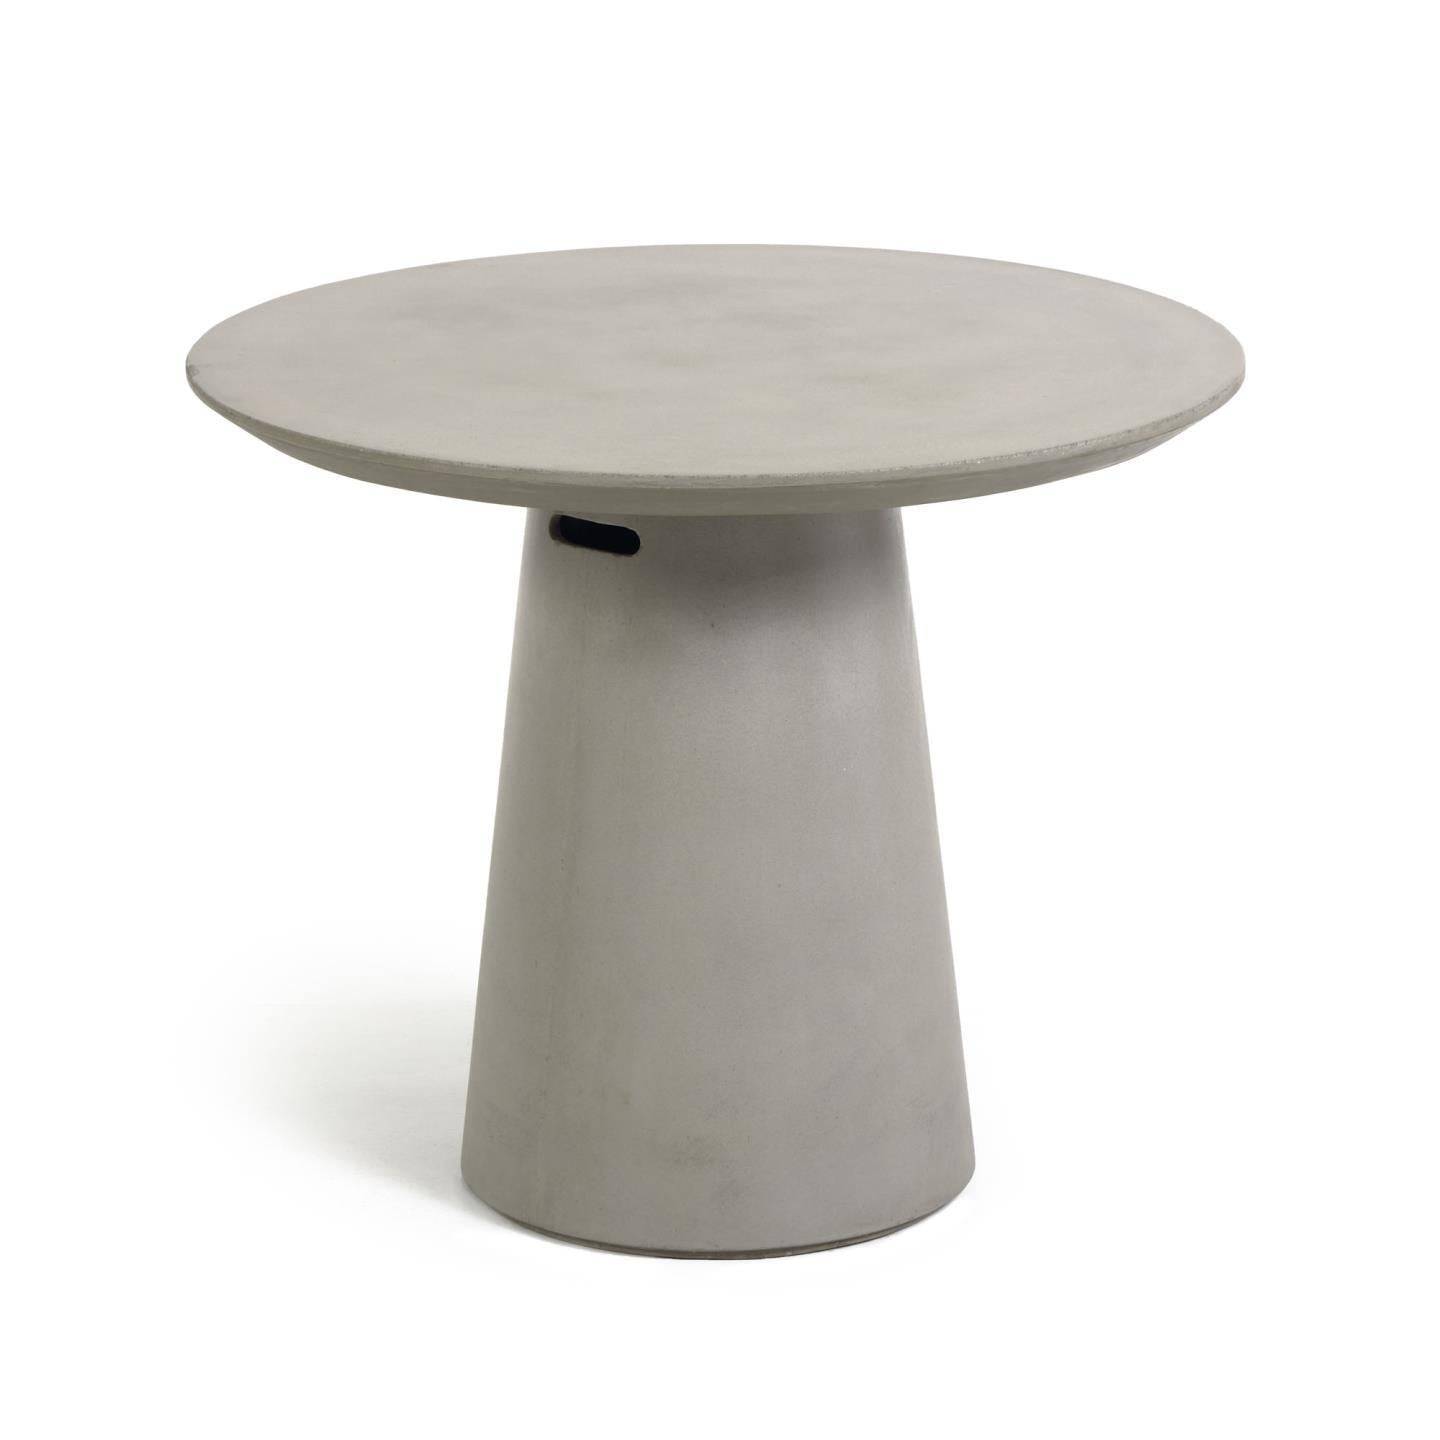 TABLE DE JARDIN RONDE Ø 90 cm